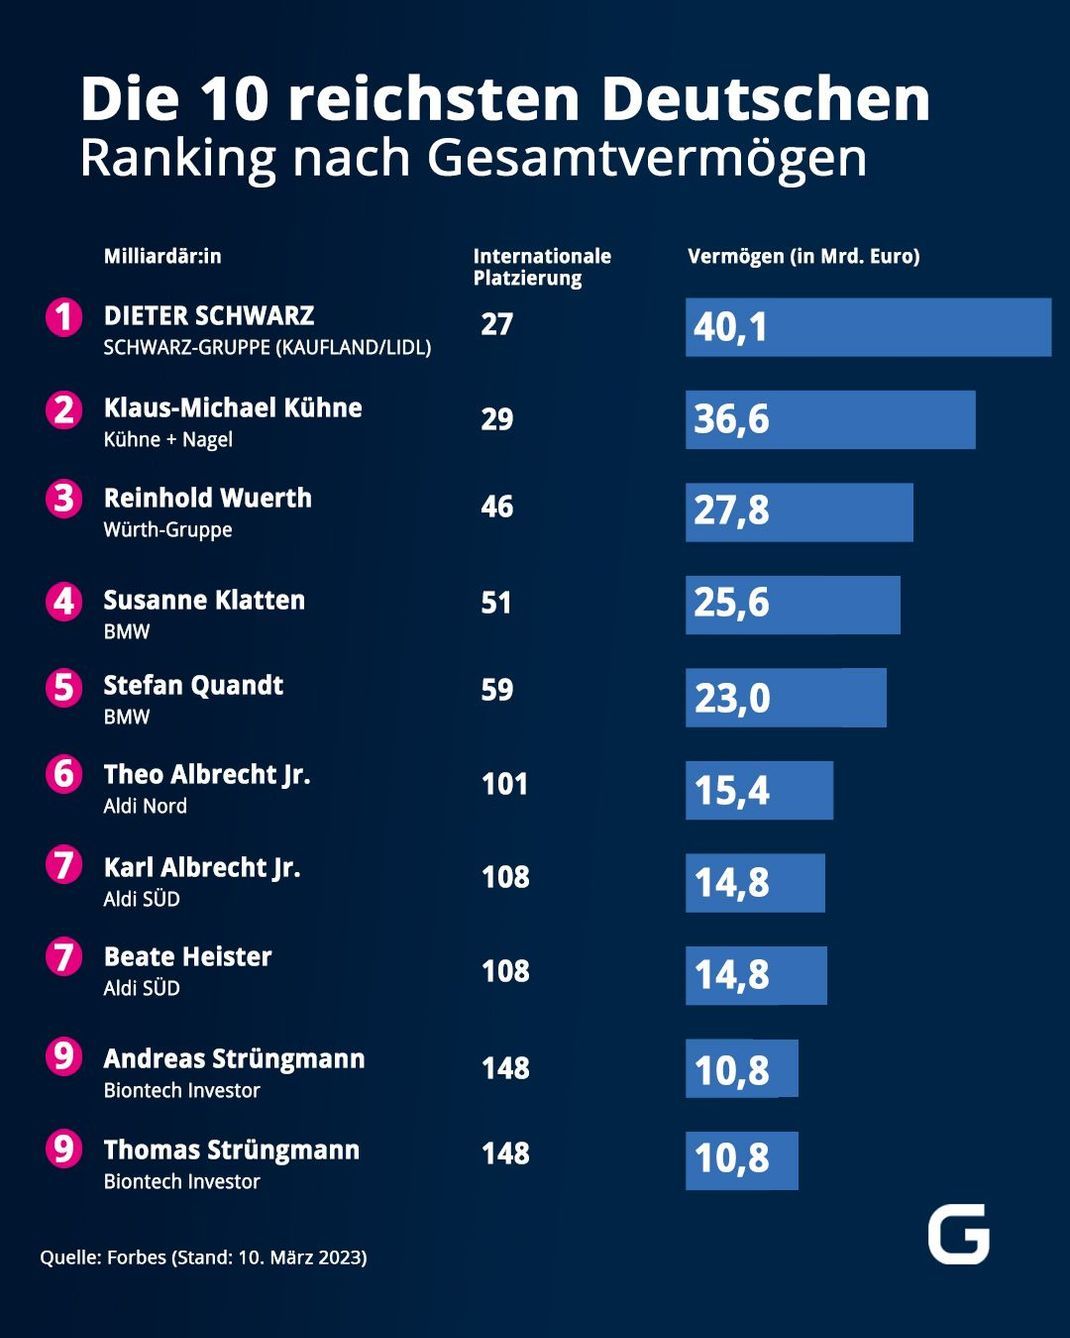 Das sind laut Forbes-Ranking die reichsten Deutschen 2023. 